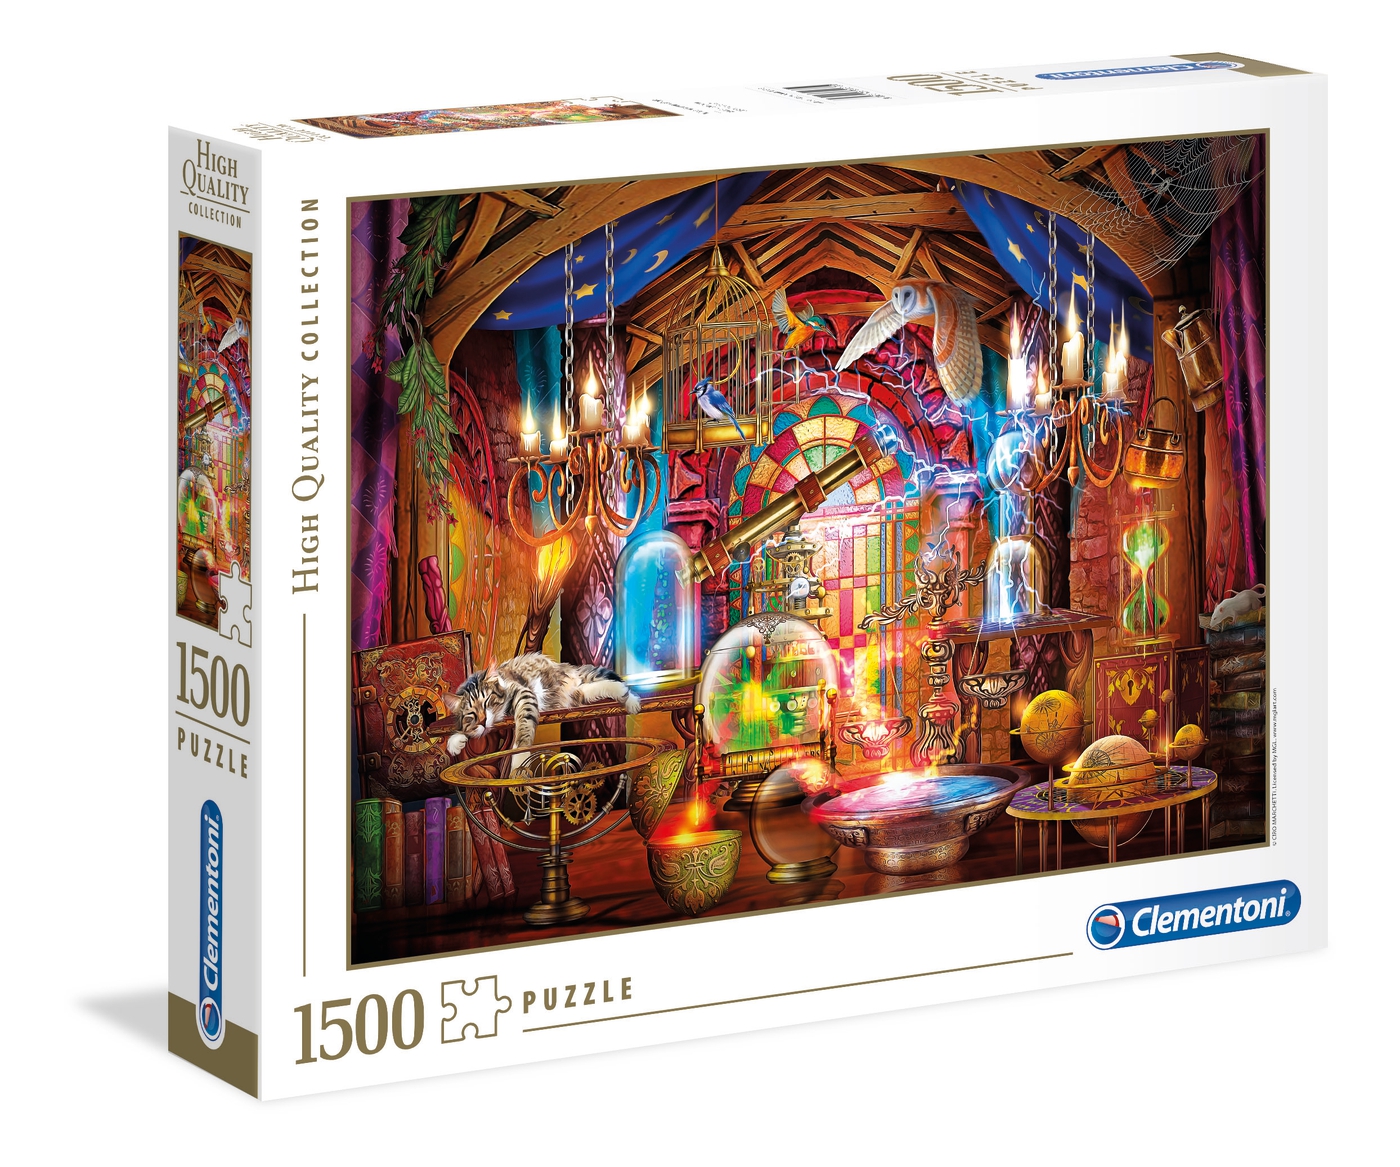 Puzzle 1500 piezas -Wizards Workshop- Clementoni